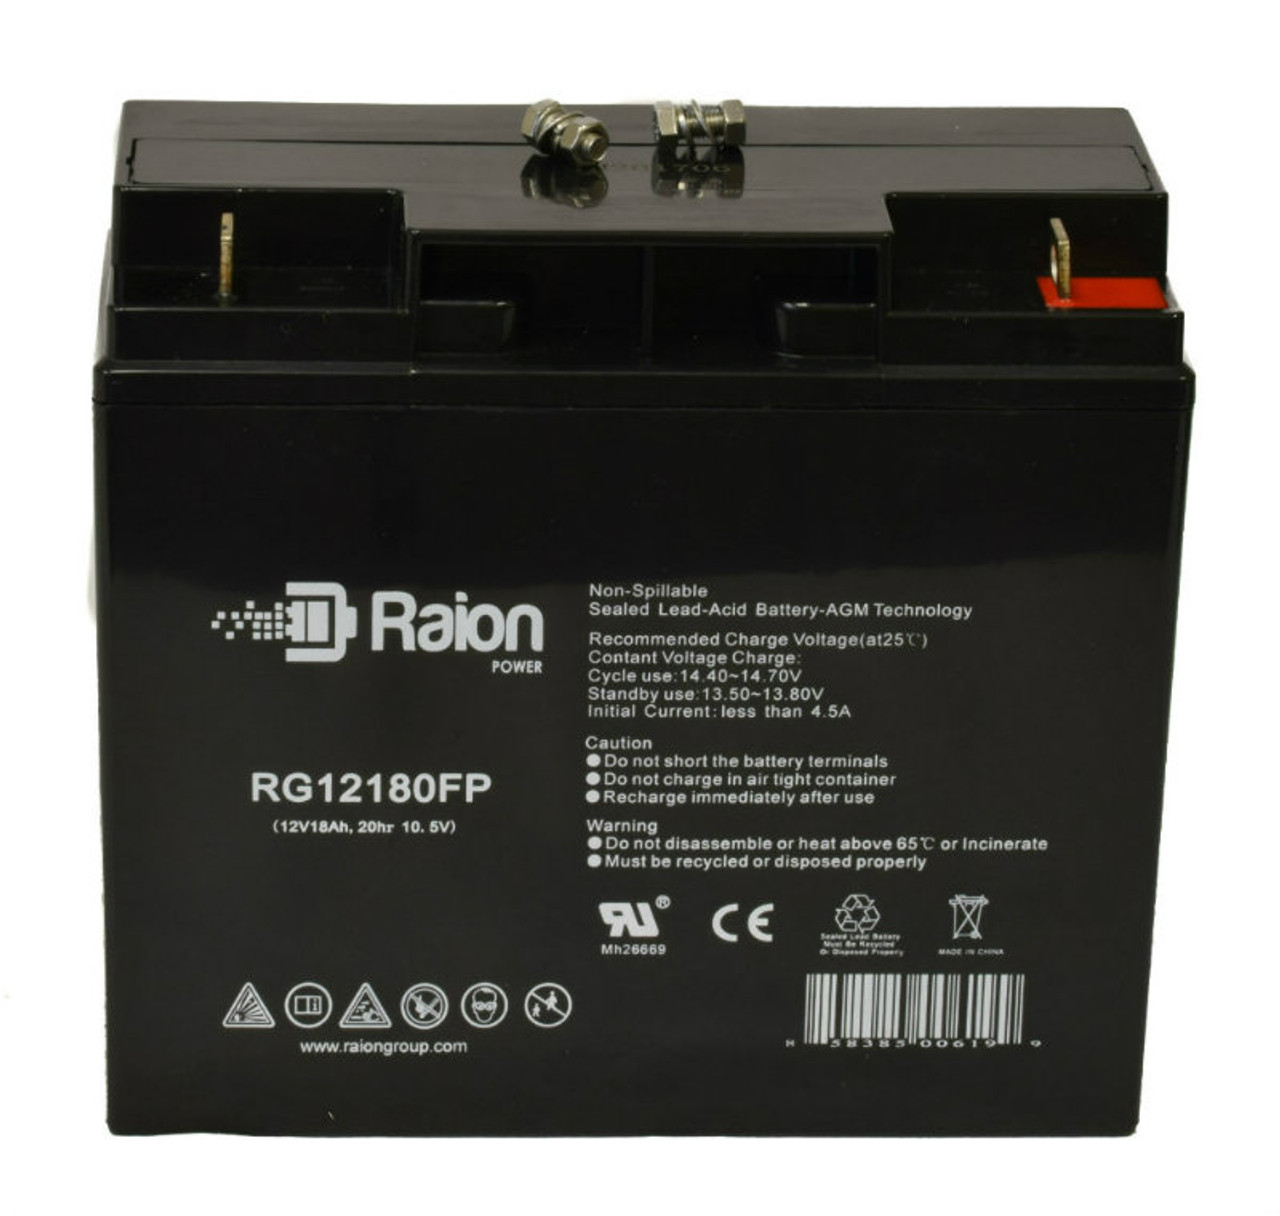 Raion Power RG12180FP 12V 18Ah Lead Acid Battery for Simplex Alarm 20819275